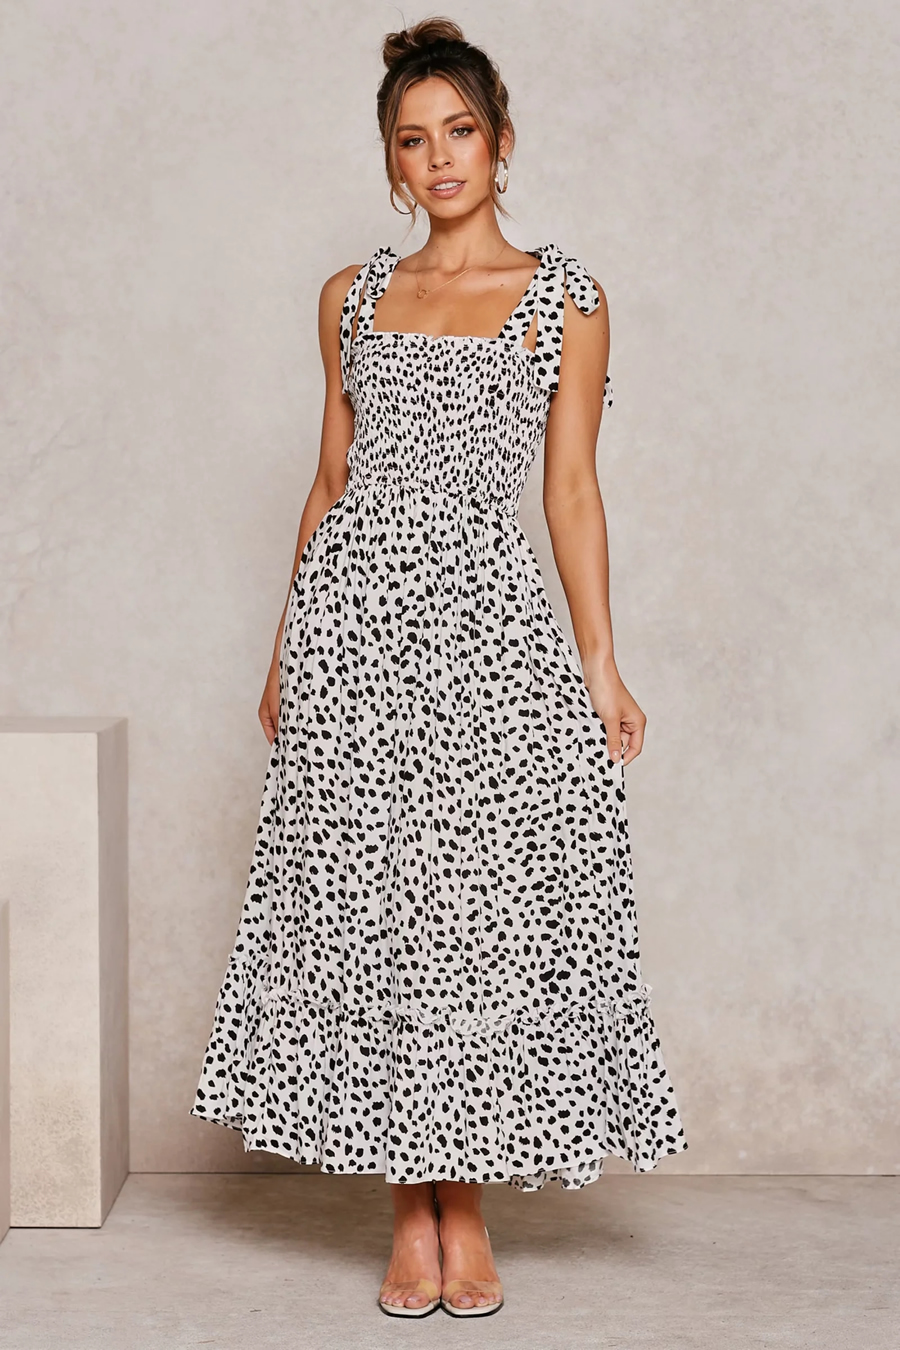 Fashion Black Polka-dot Print Lace-up Dress,Long Dress